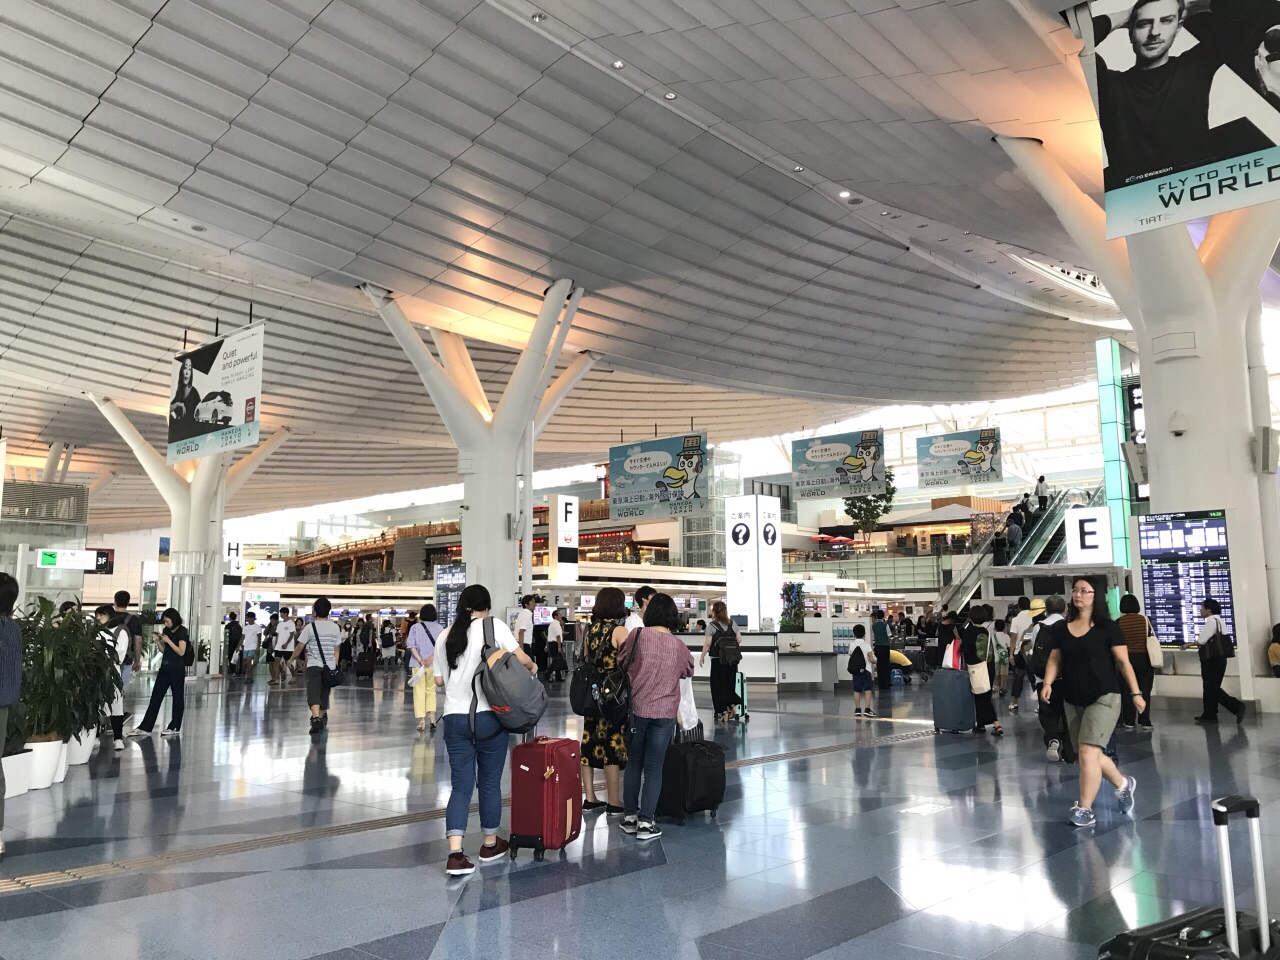 【羽田空港第3ターミナル】国際線が発着するターミナルのレストランやホテルなどの施設情報を徹底解説 – トーキョーさんぽ